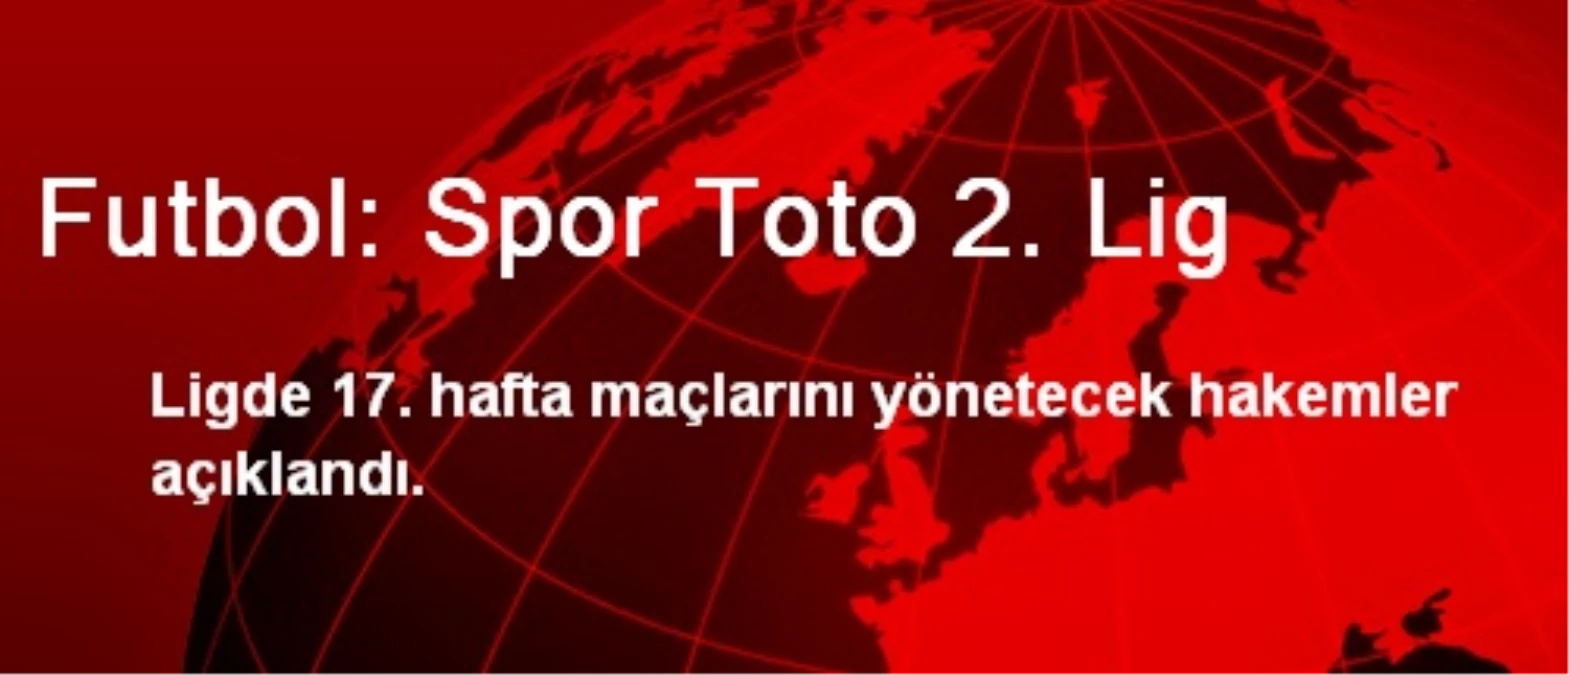 Futbol: Spor Toto 2. Lig